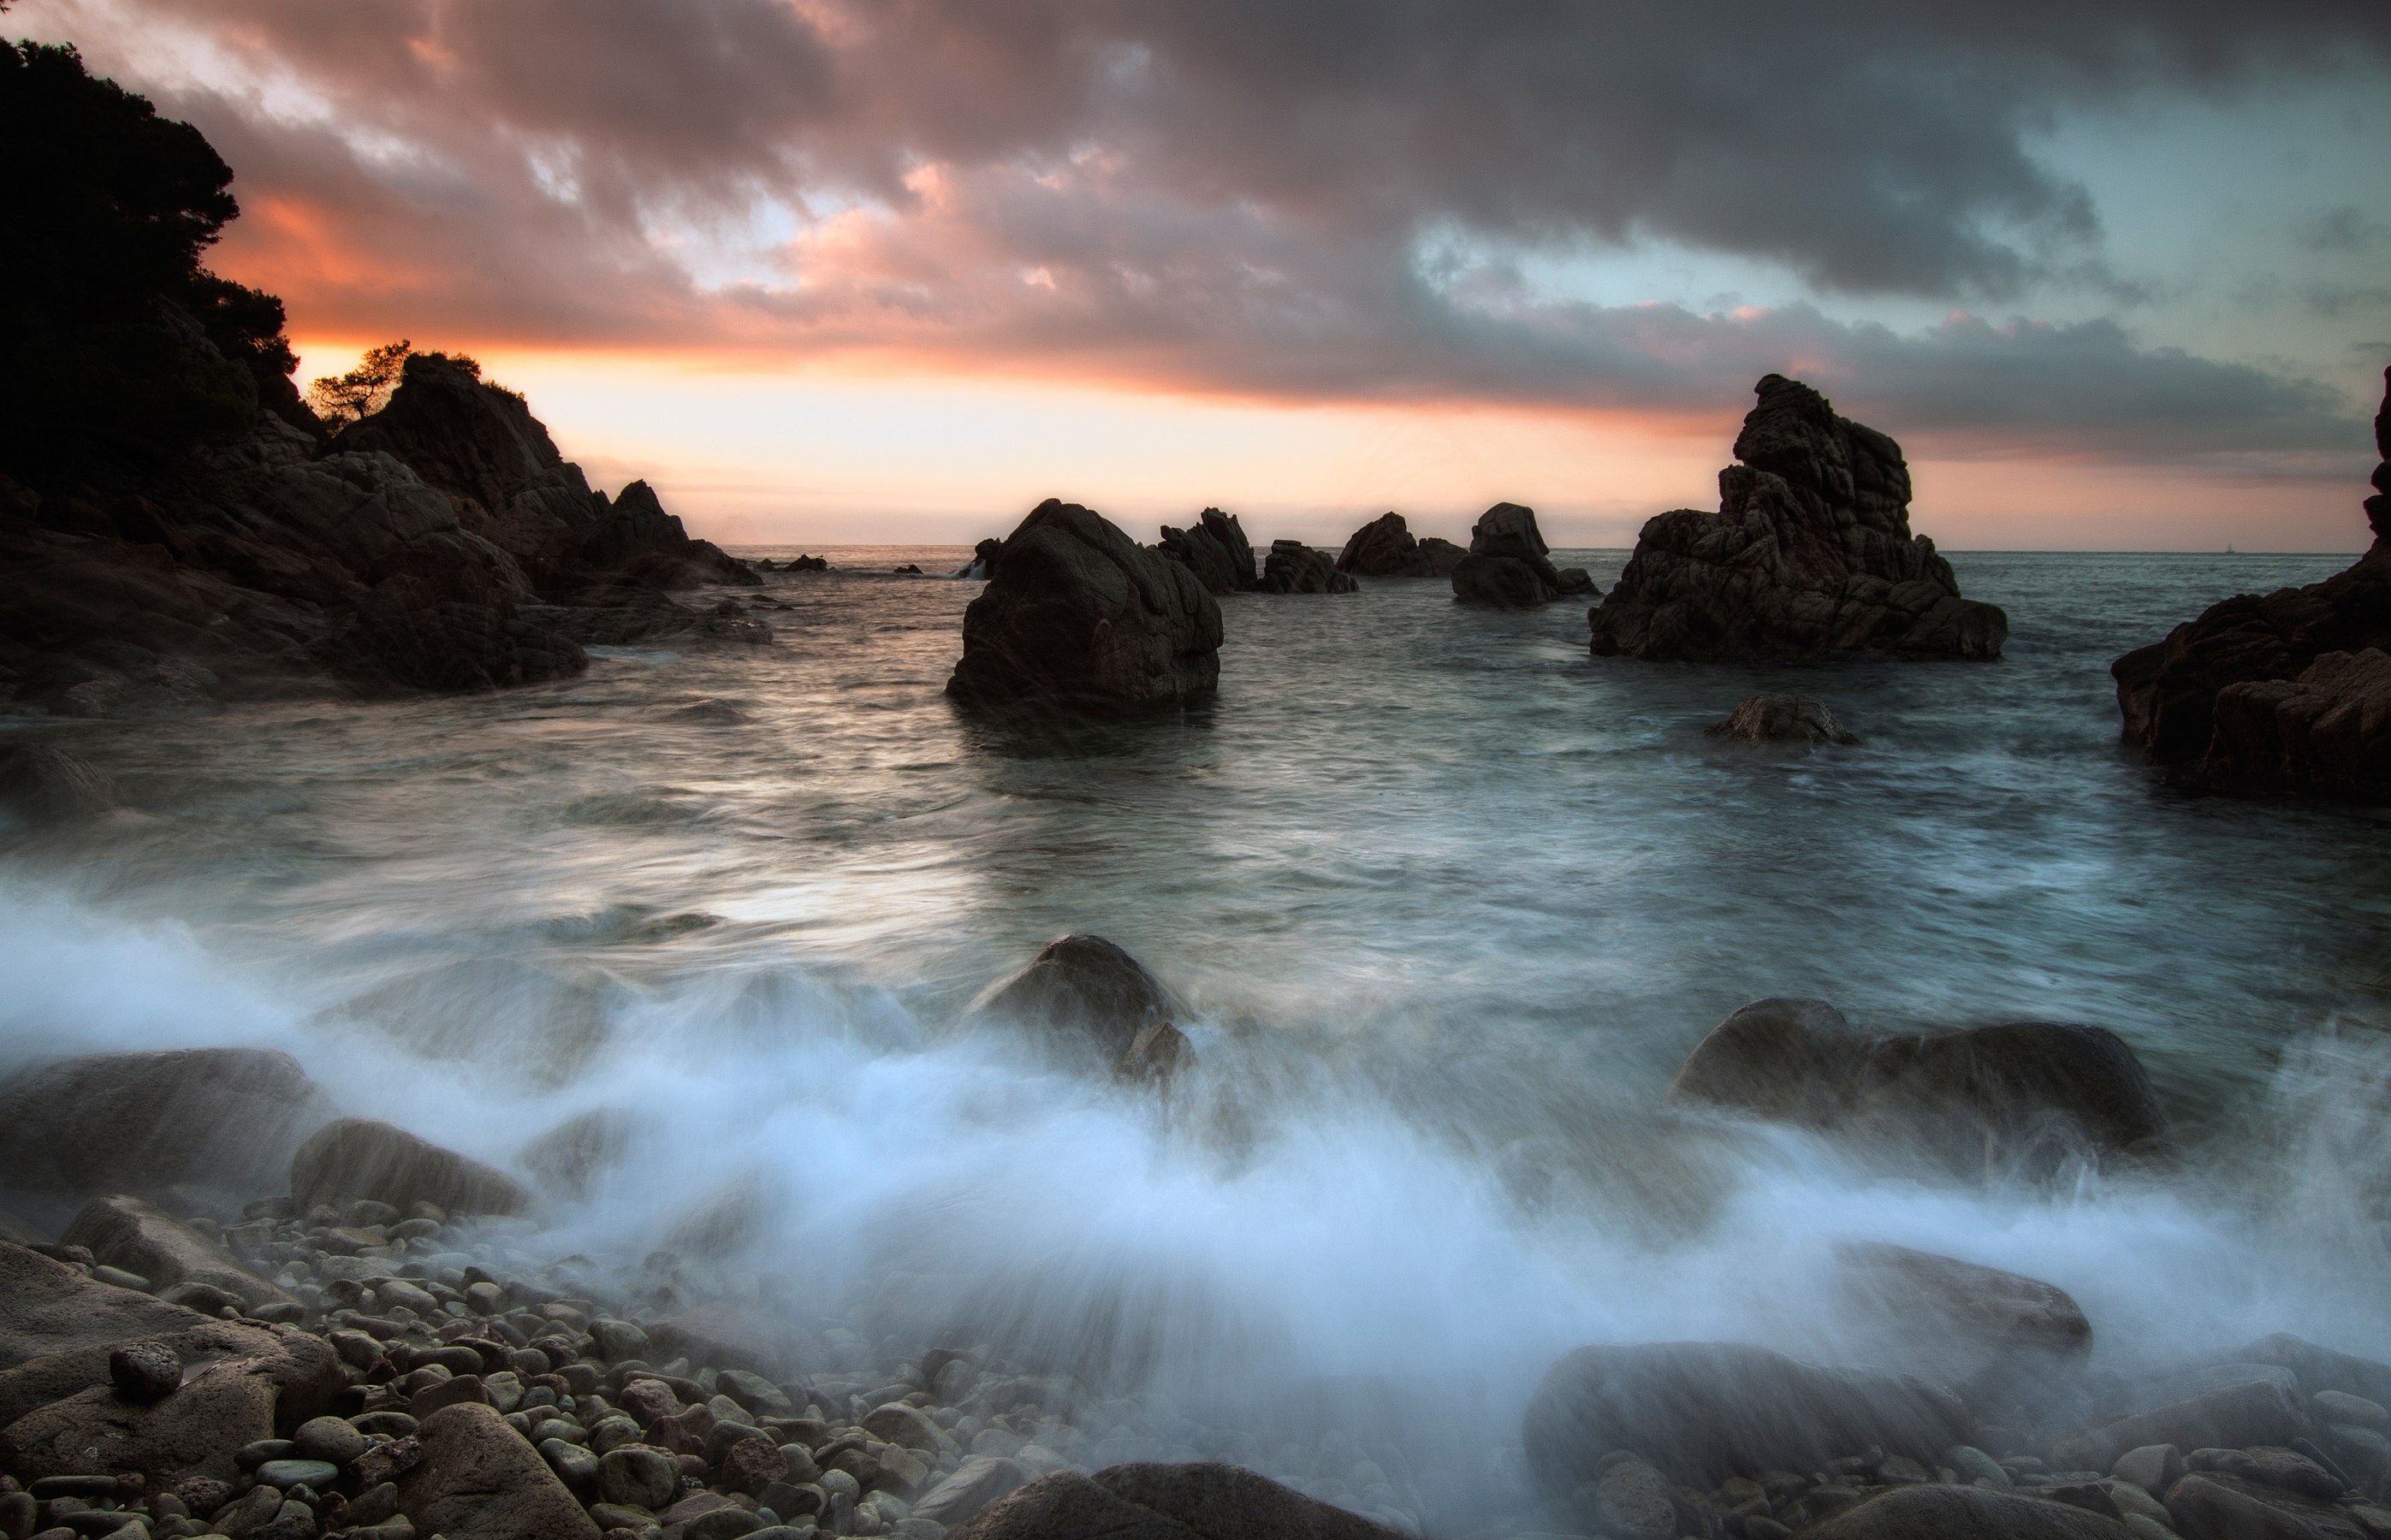 Cove's rocks in Cala des Frares, Lloret de Mar, Massís de les Cadiretes © Mikipons